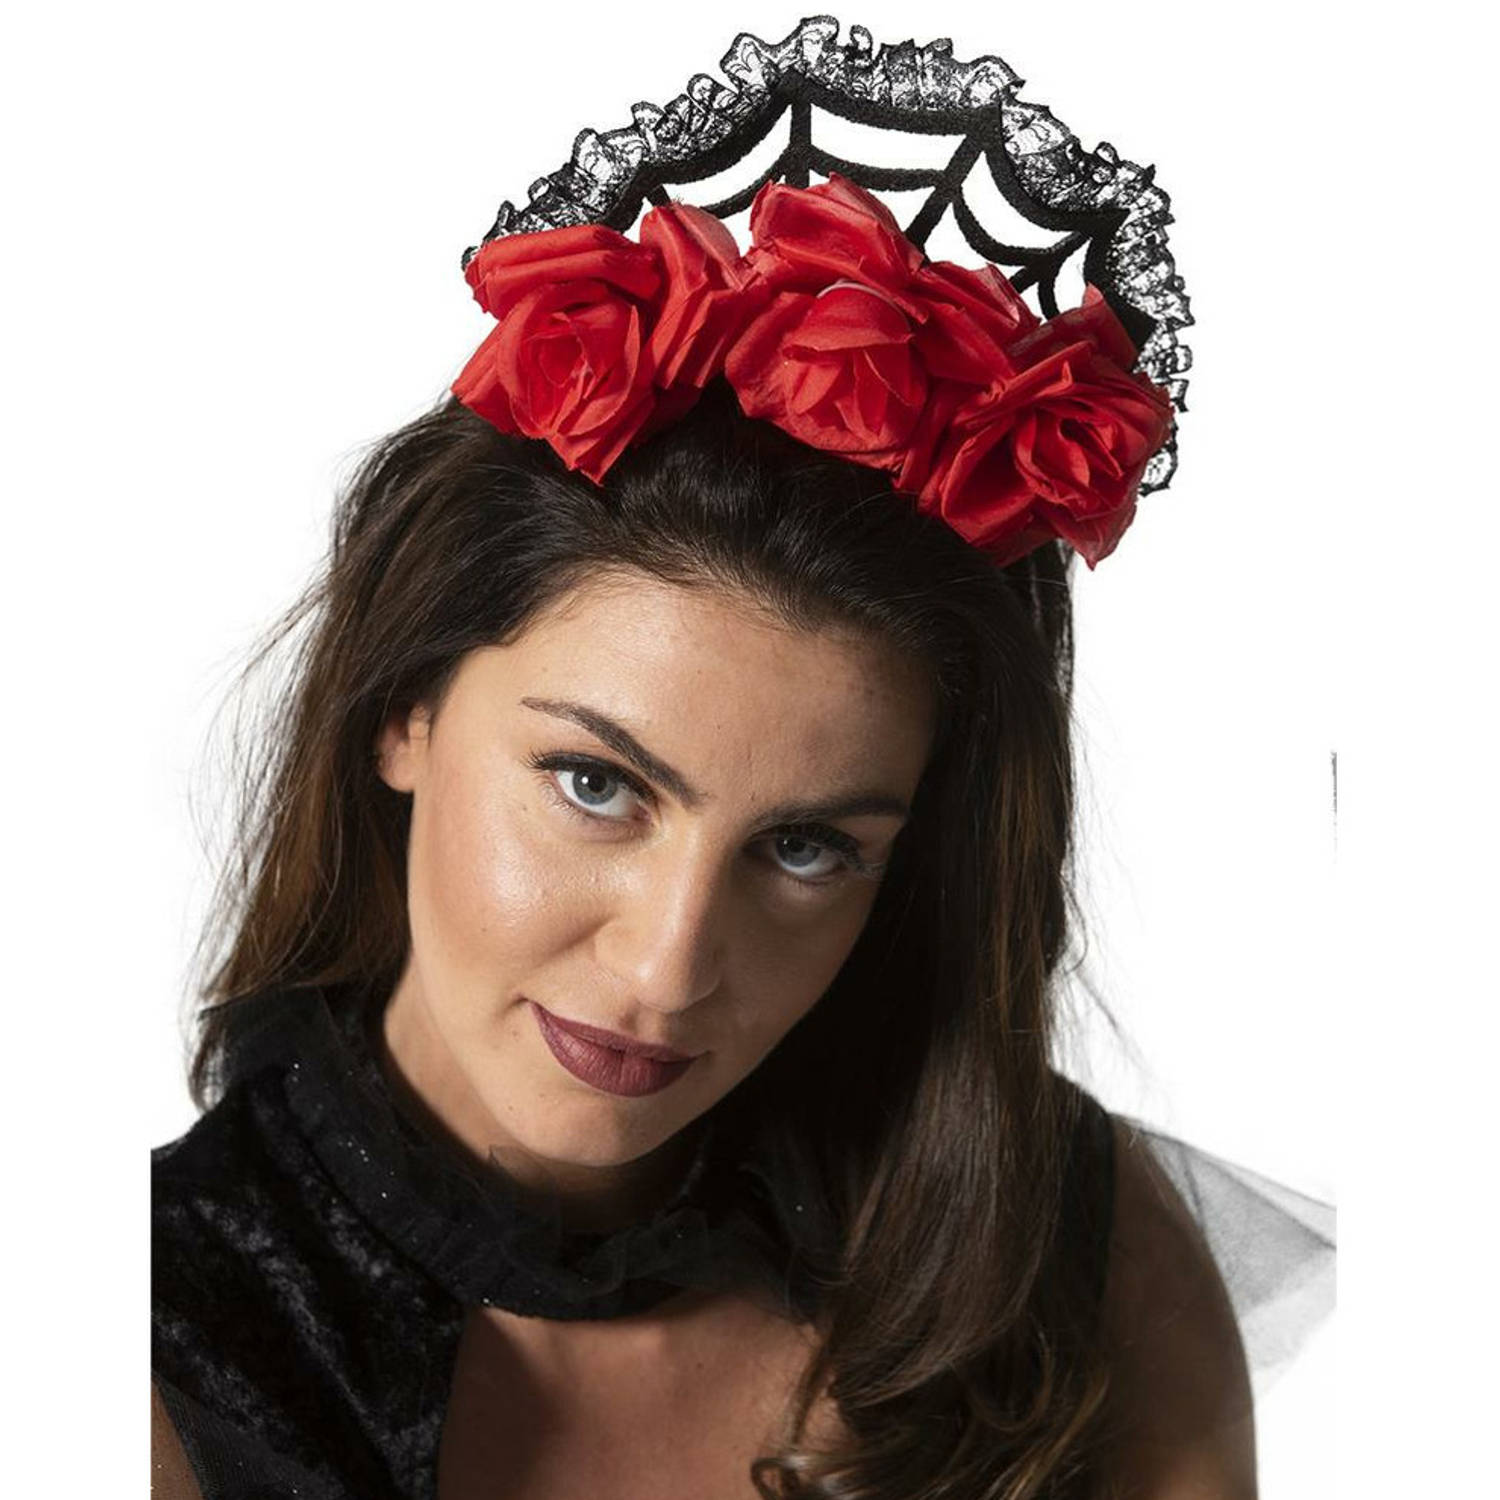 Rozen/bloemen verkleed diadeem/tiara/kroon - zwart - kunststof - volwassenen - Halloween/day of the dead thema